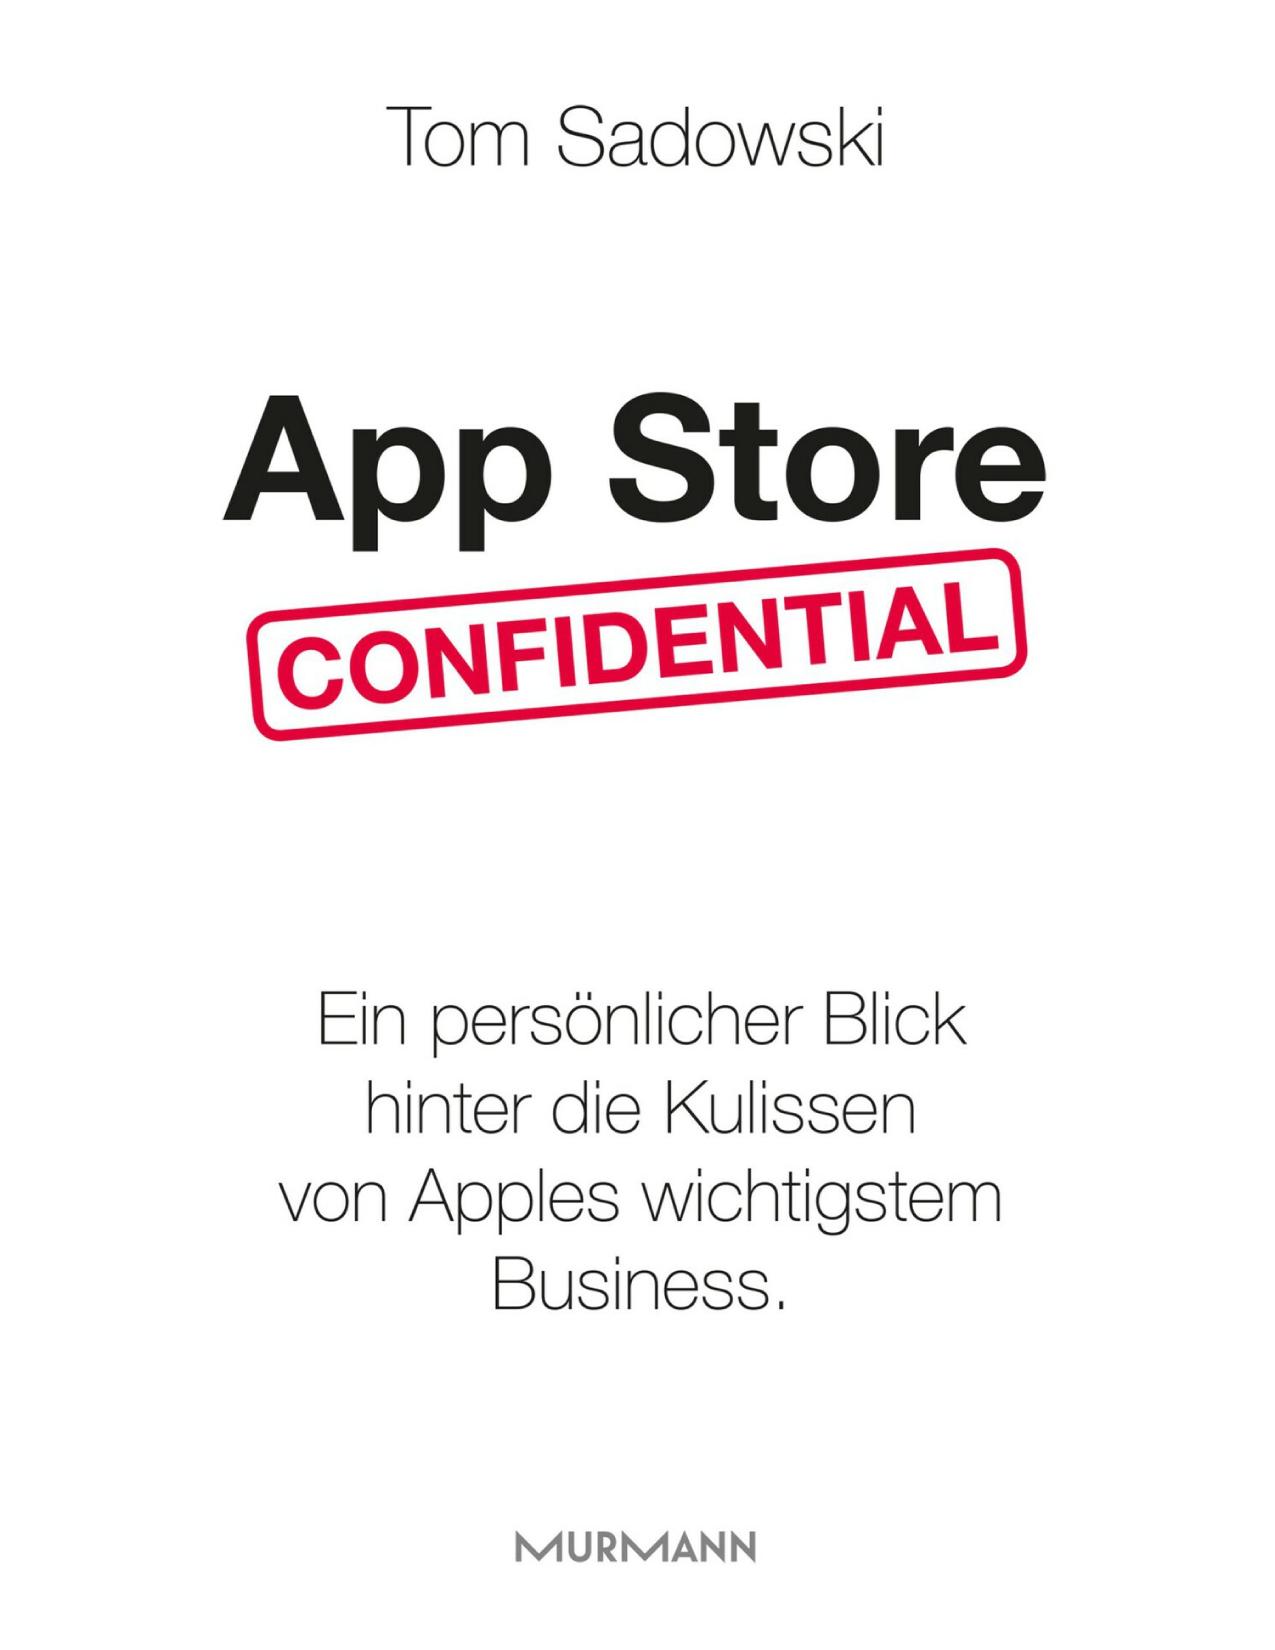 App Store Confidential ein persönlicher Blick hinter die Kulissen von Apples wichtigstem Business